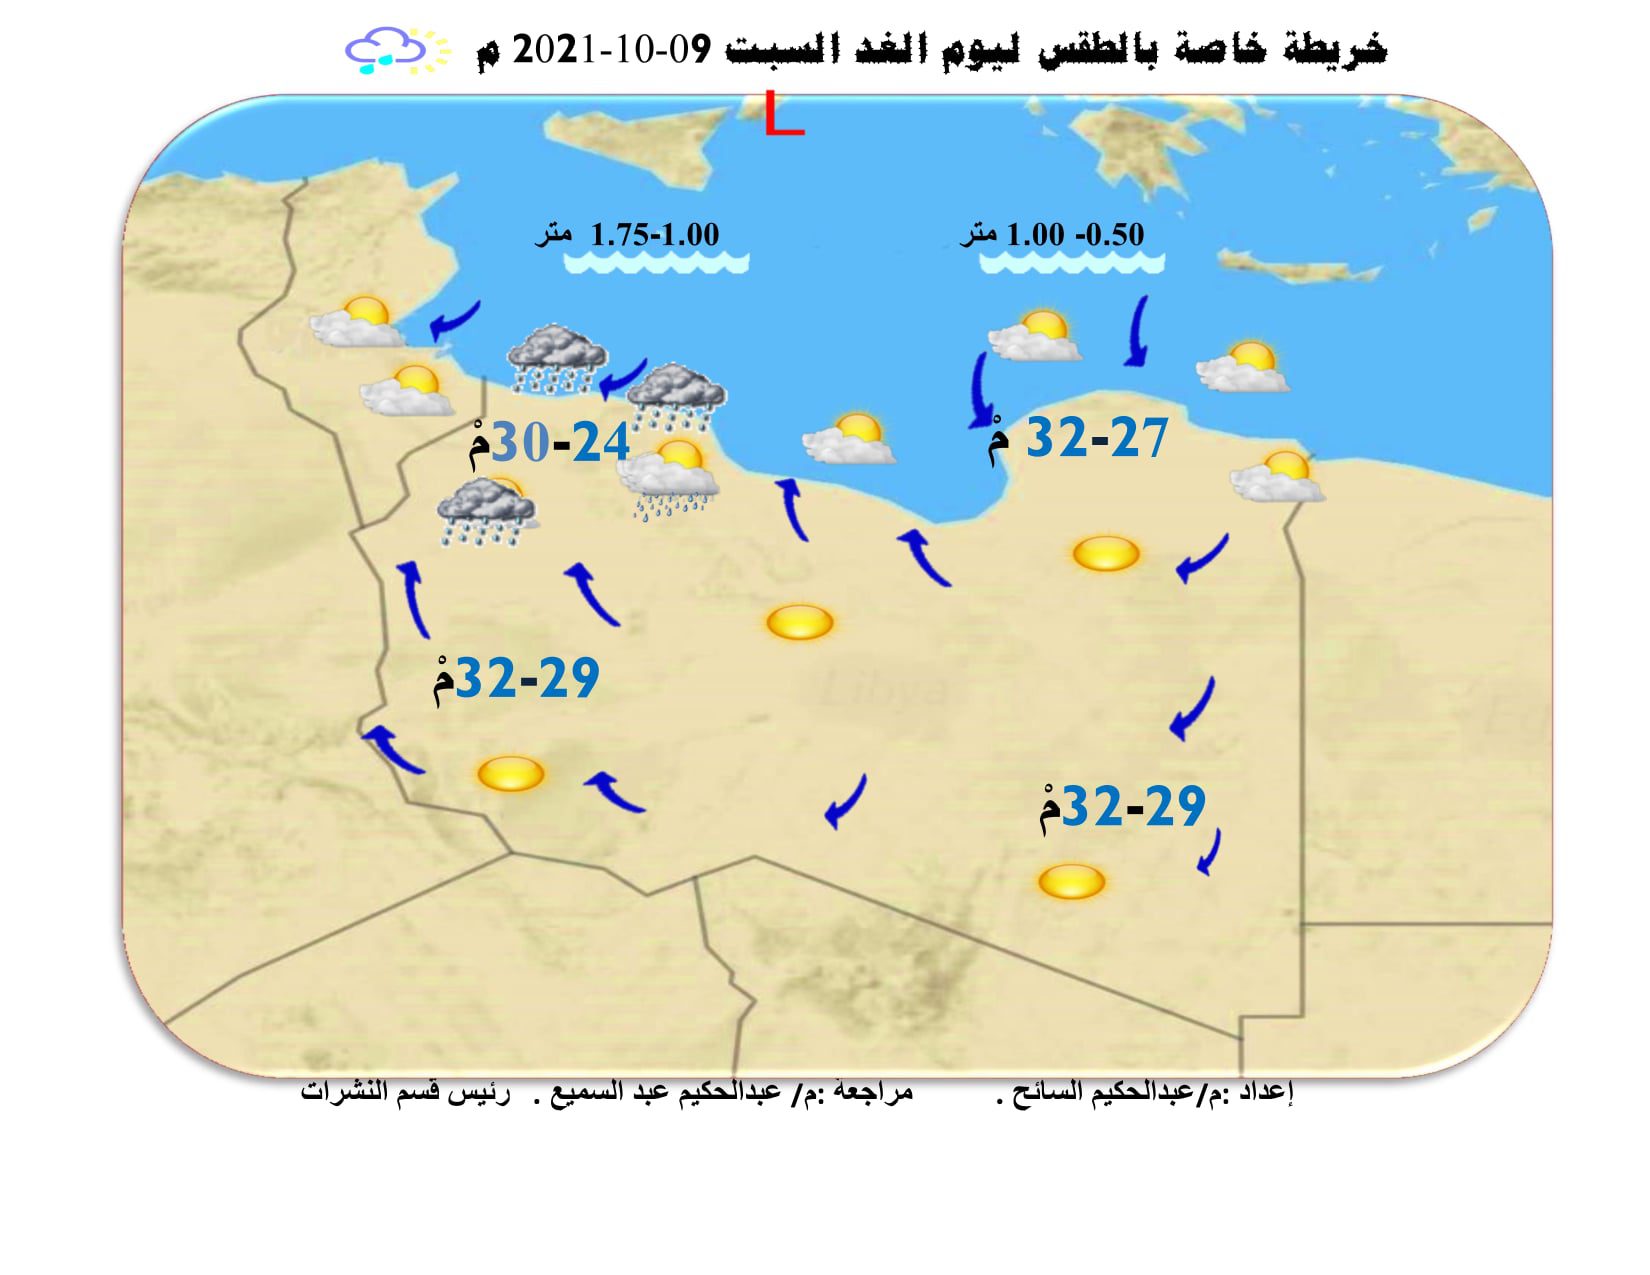 الأحوال الجوية المتوقعة على ليبيا خلال الثلاثة الأيام القادمة